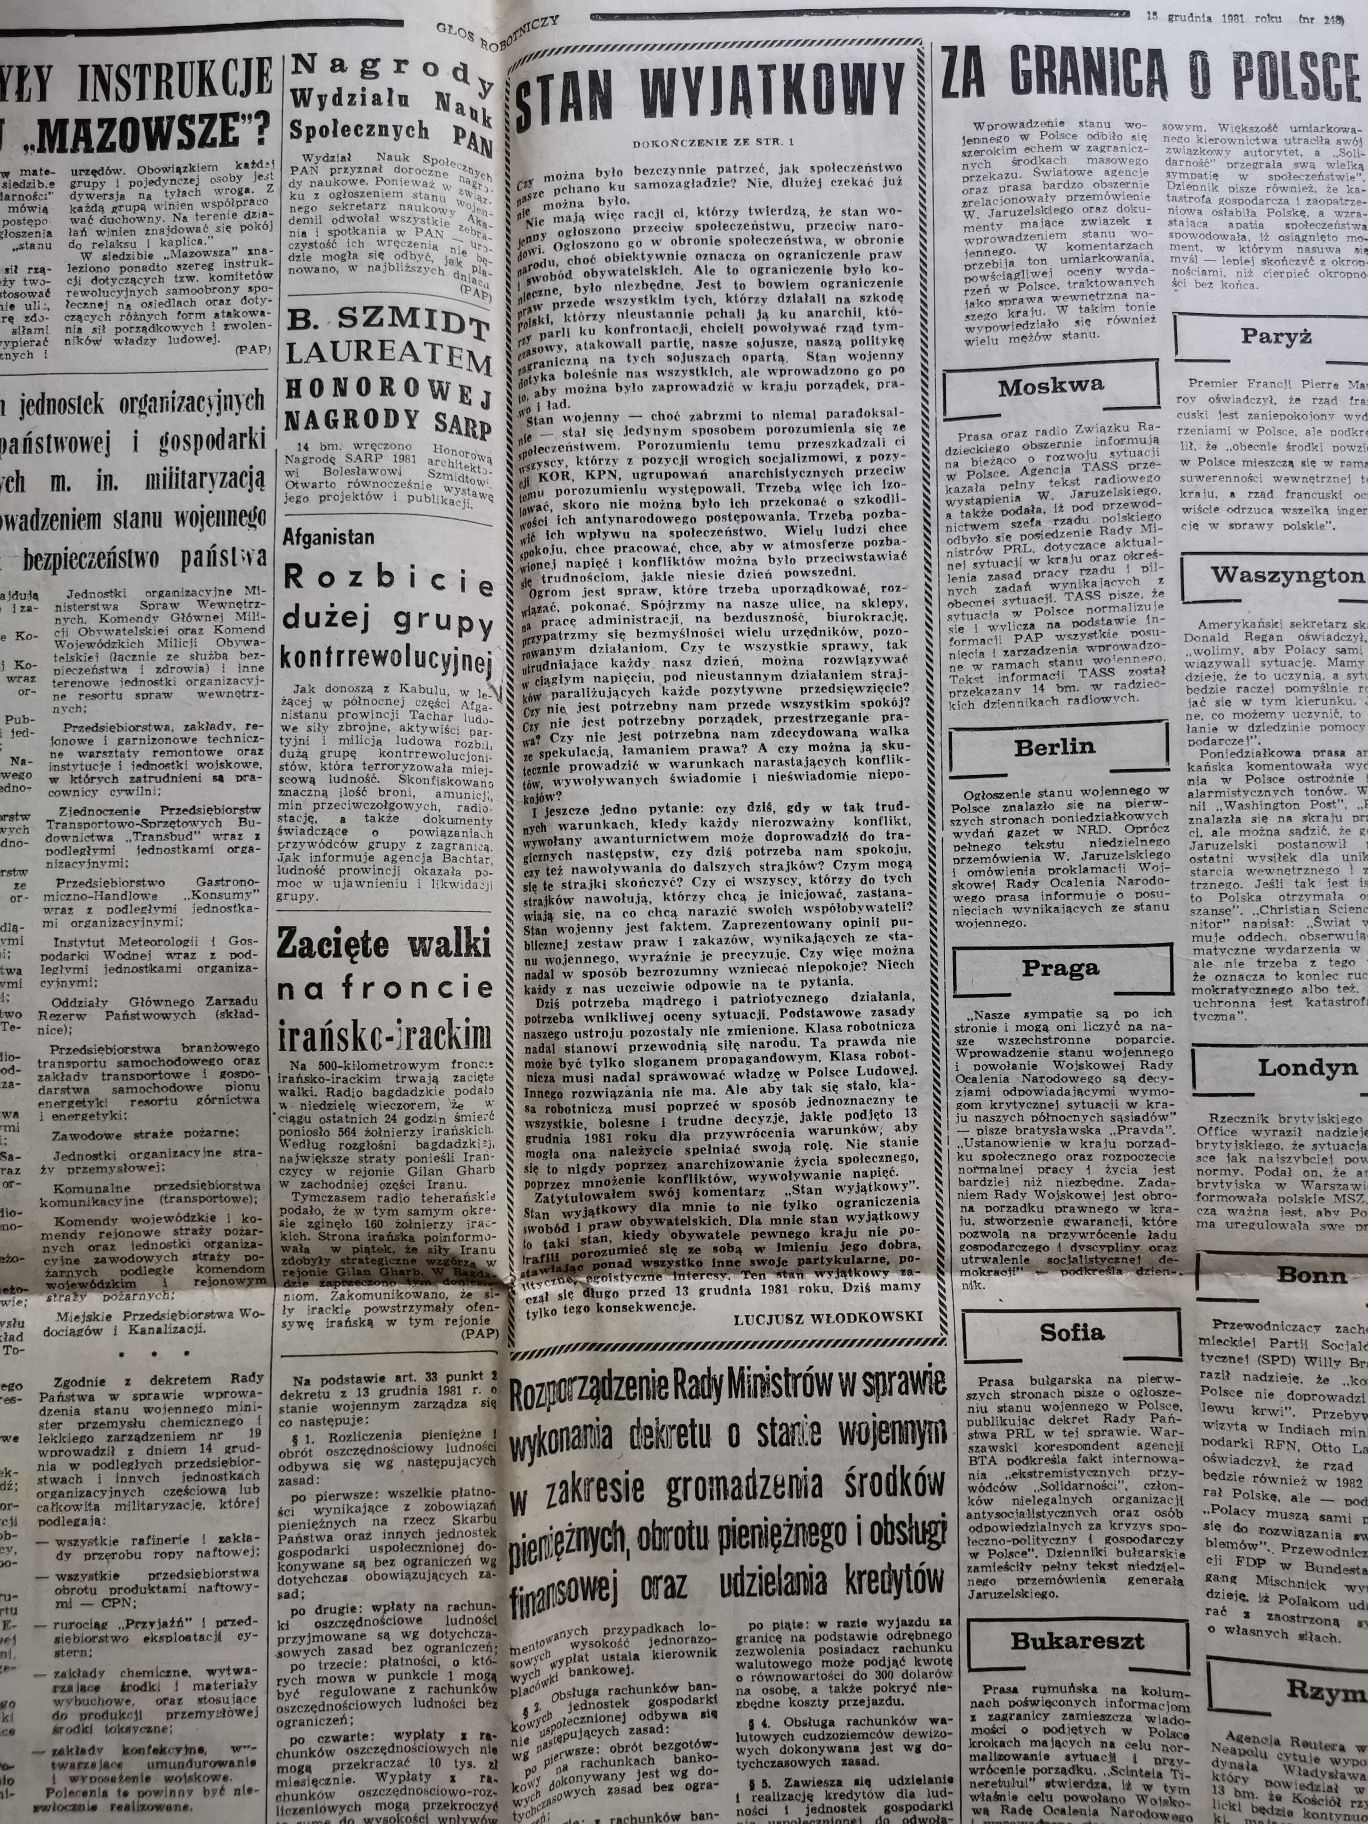 Głos robotniczy z 15 grudnia 1981 stare gazety prl